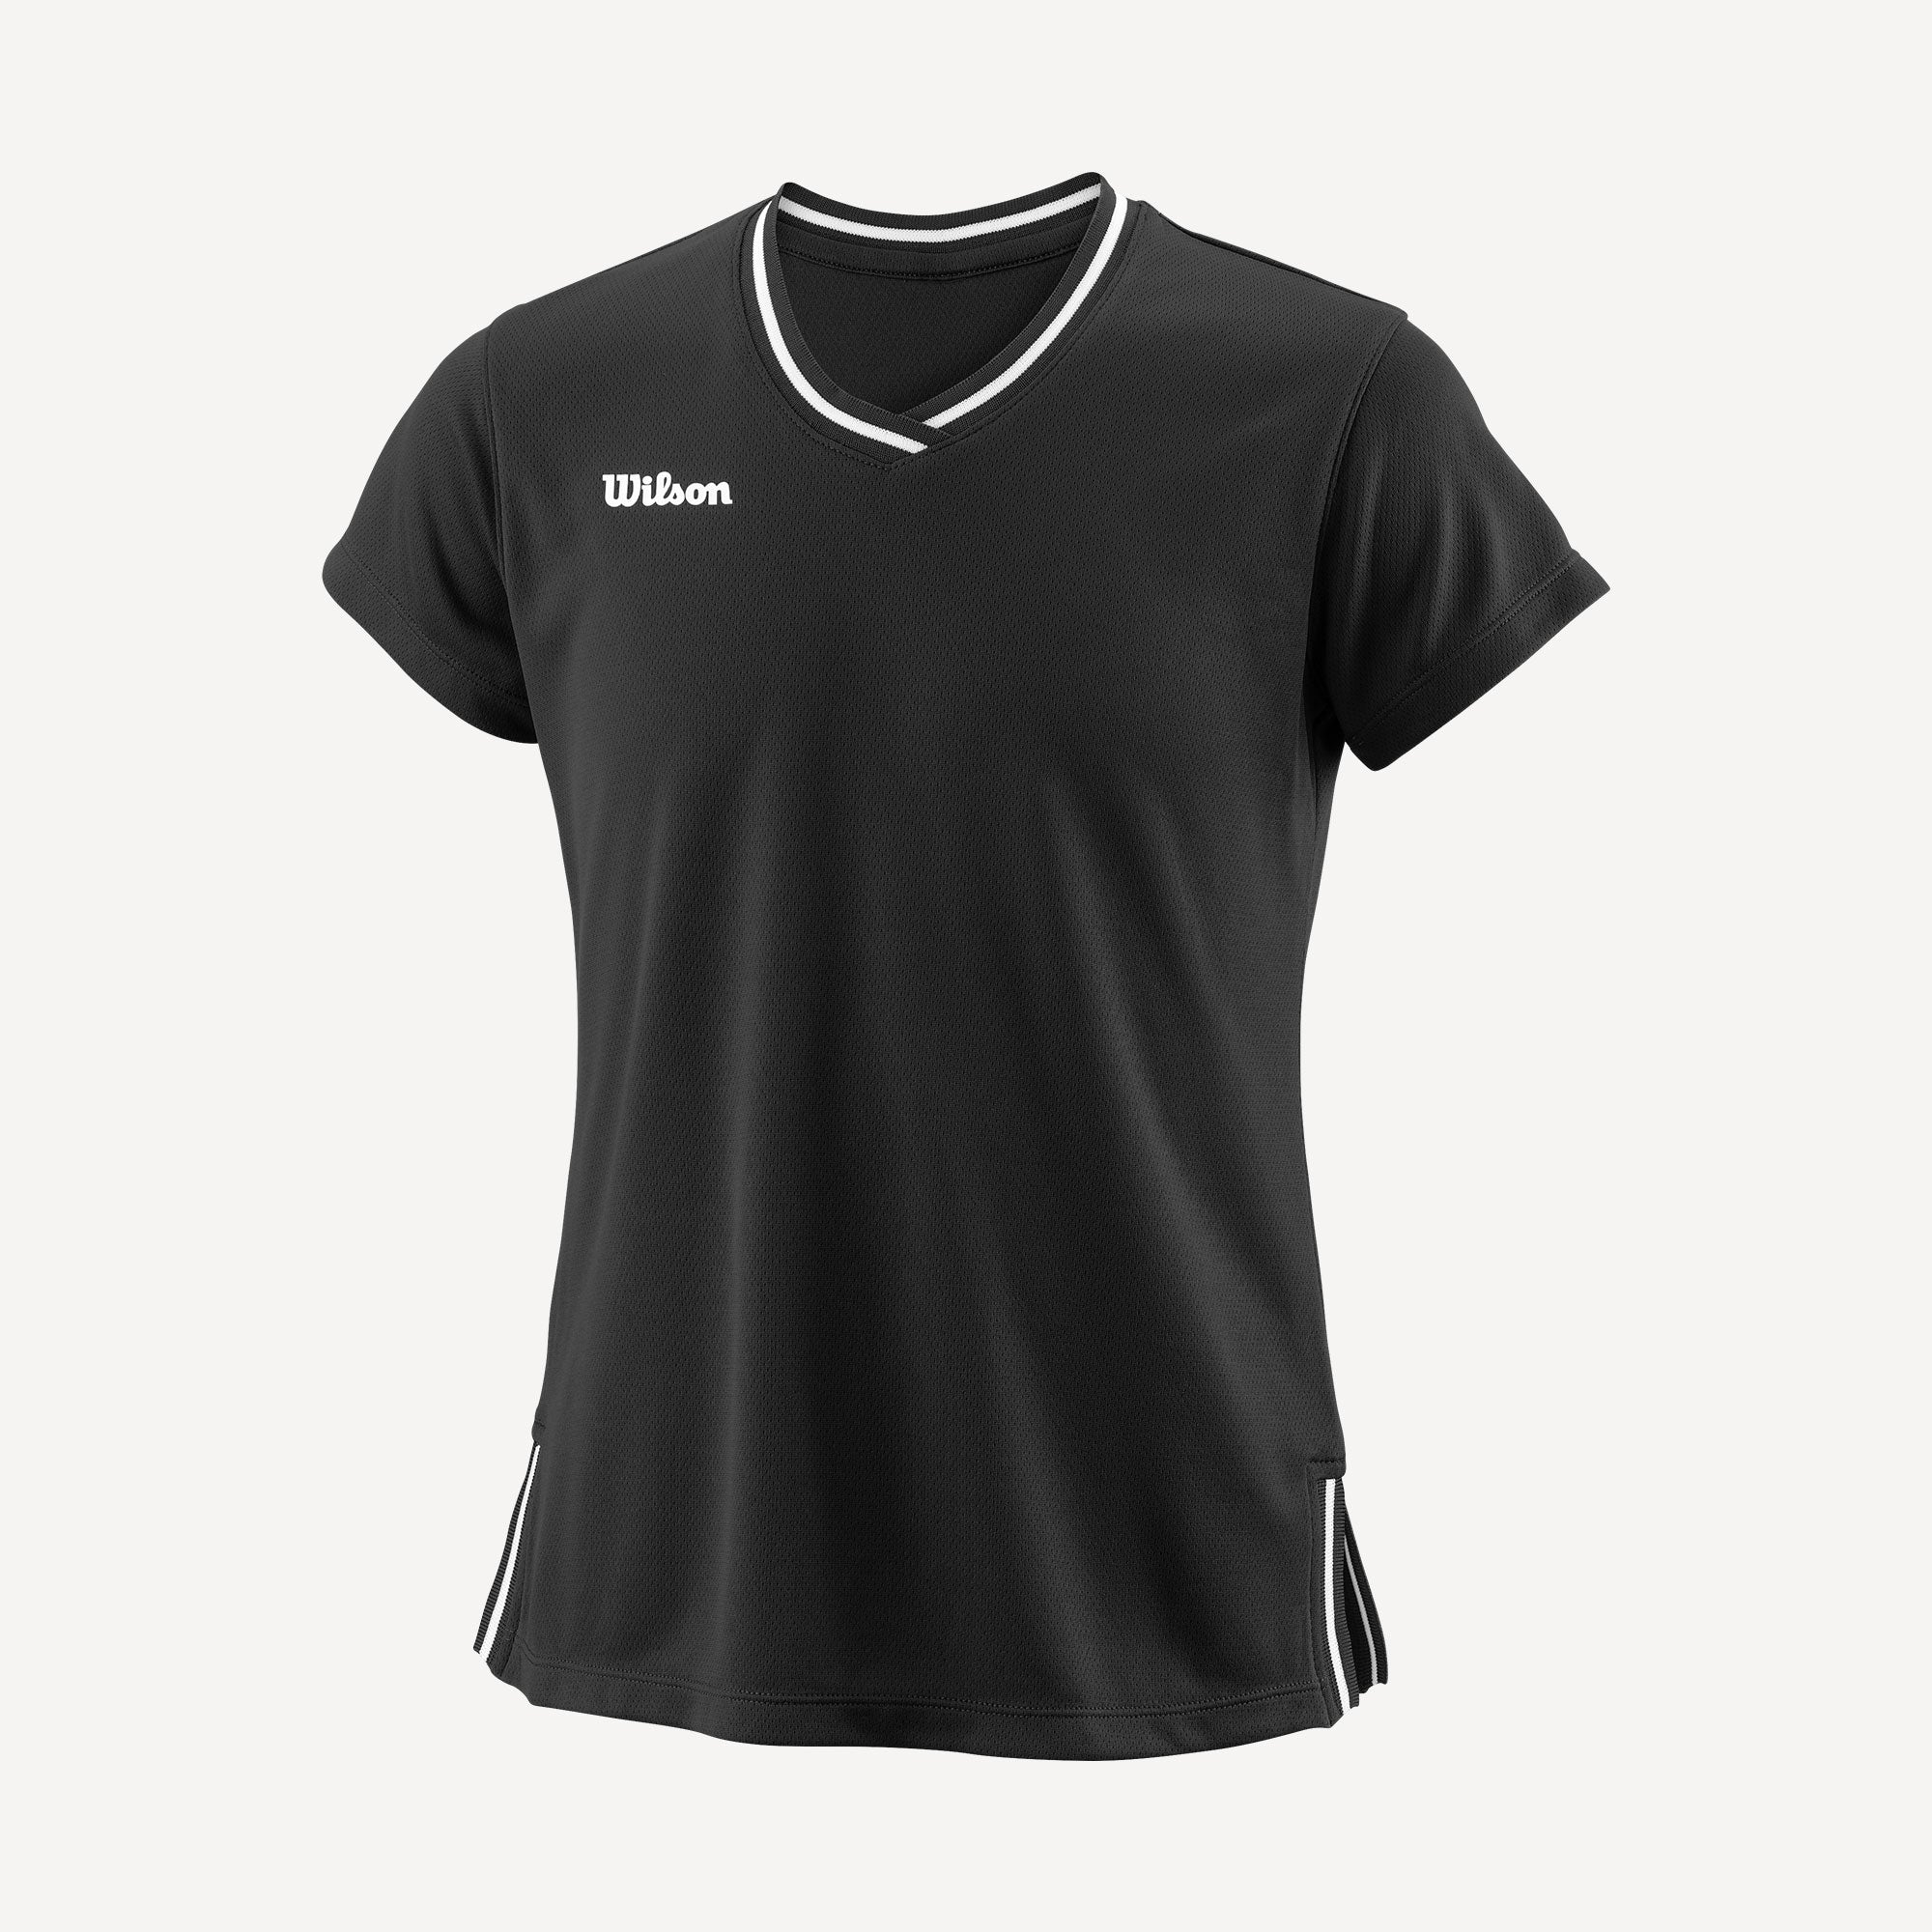 Wilson Team 2 Girls' V-Neck Tennis Shirt Black (1)